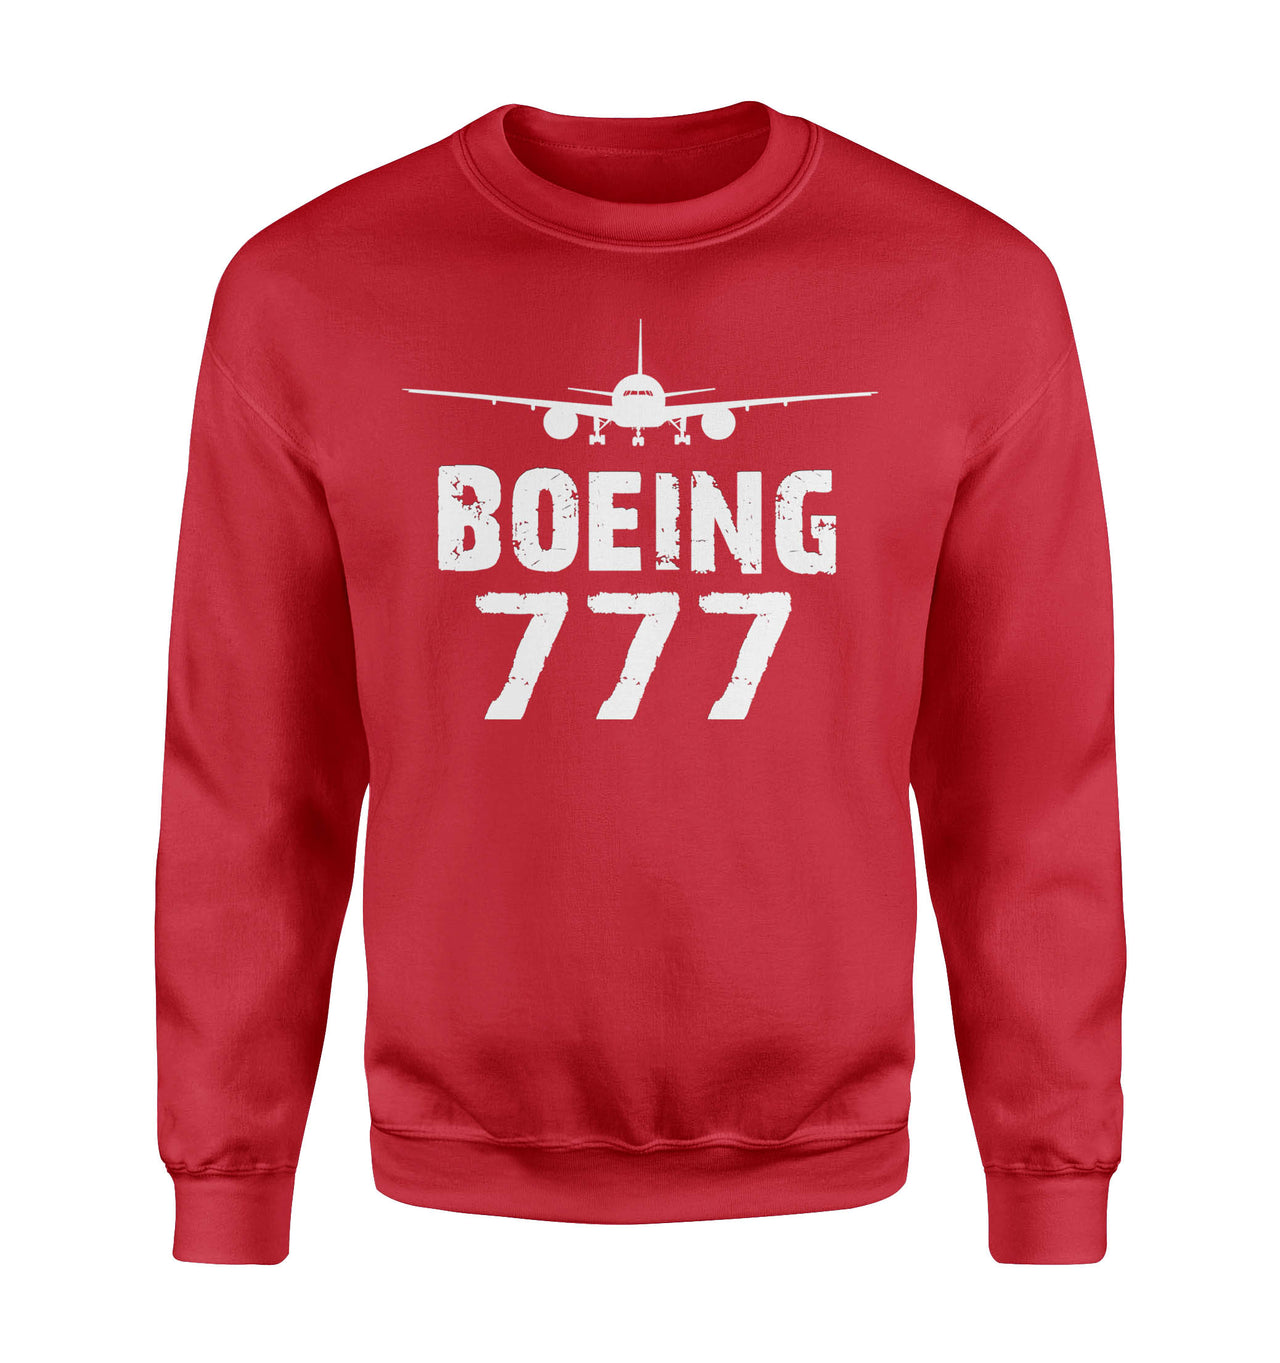 Boeing 777 & Plane Designed Sweatshirts